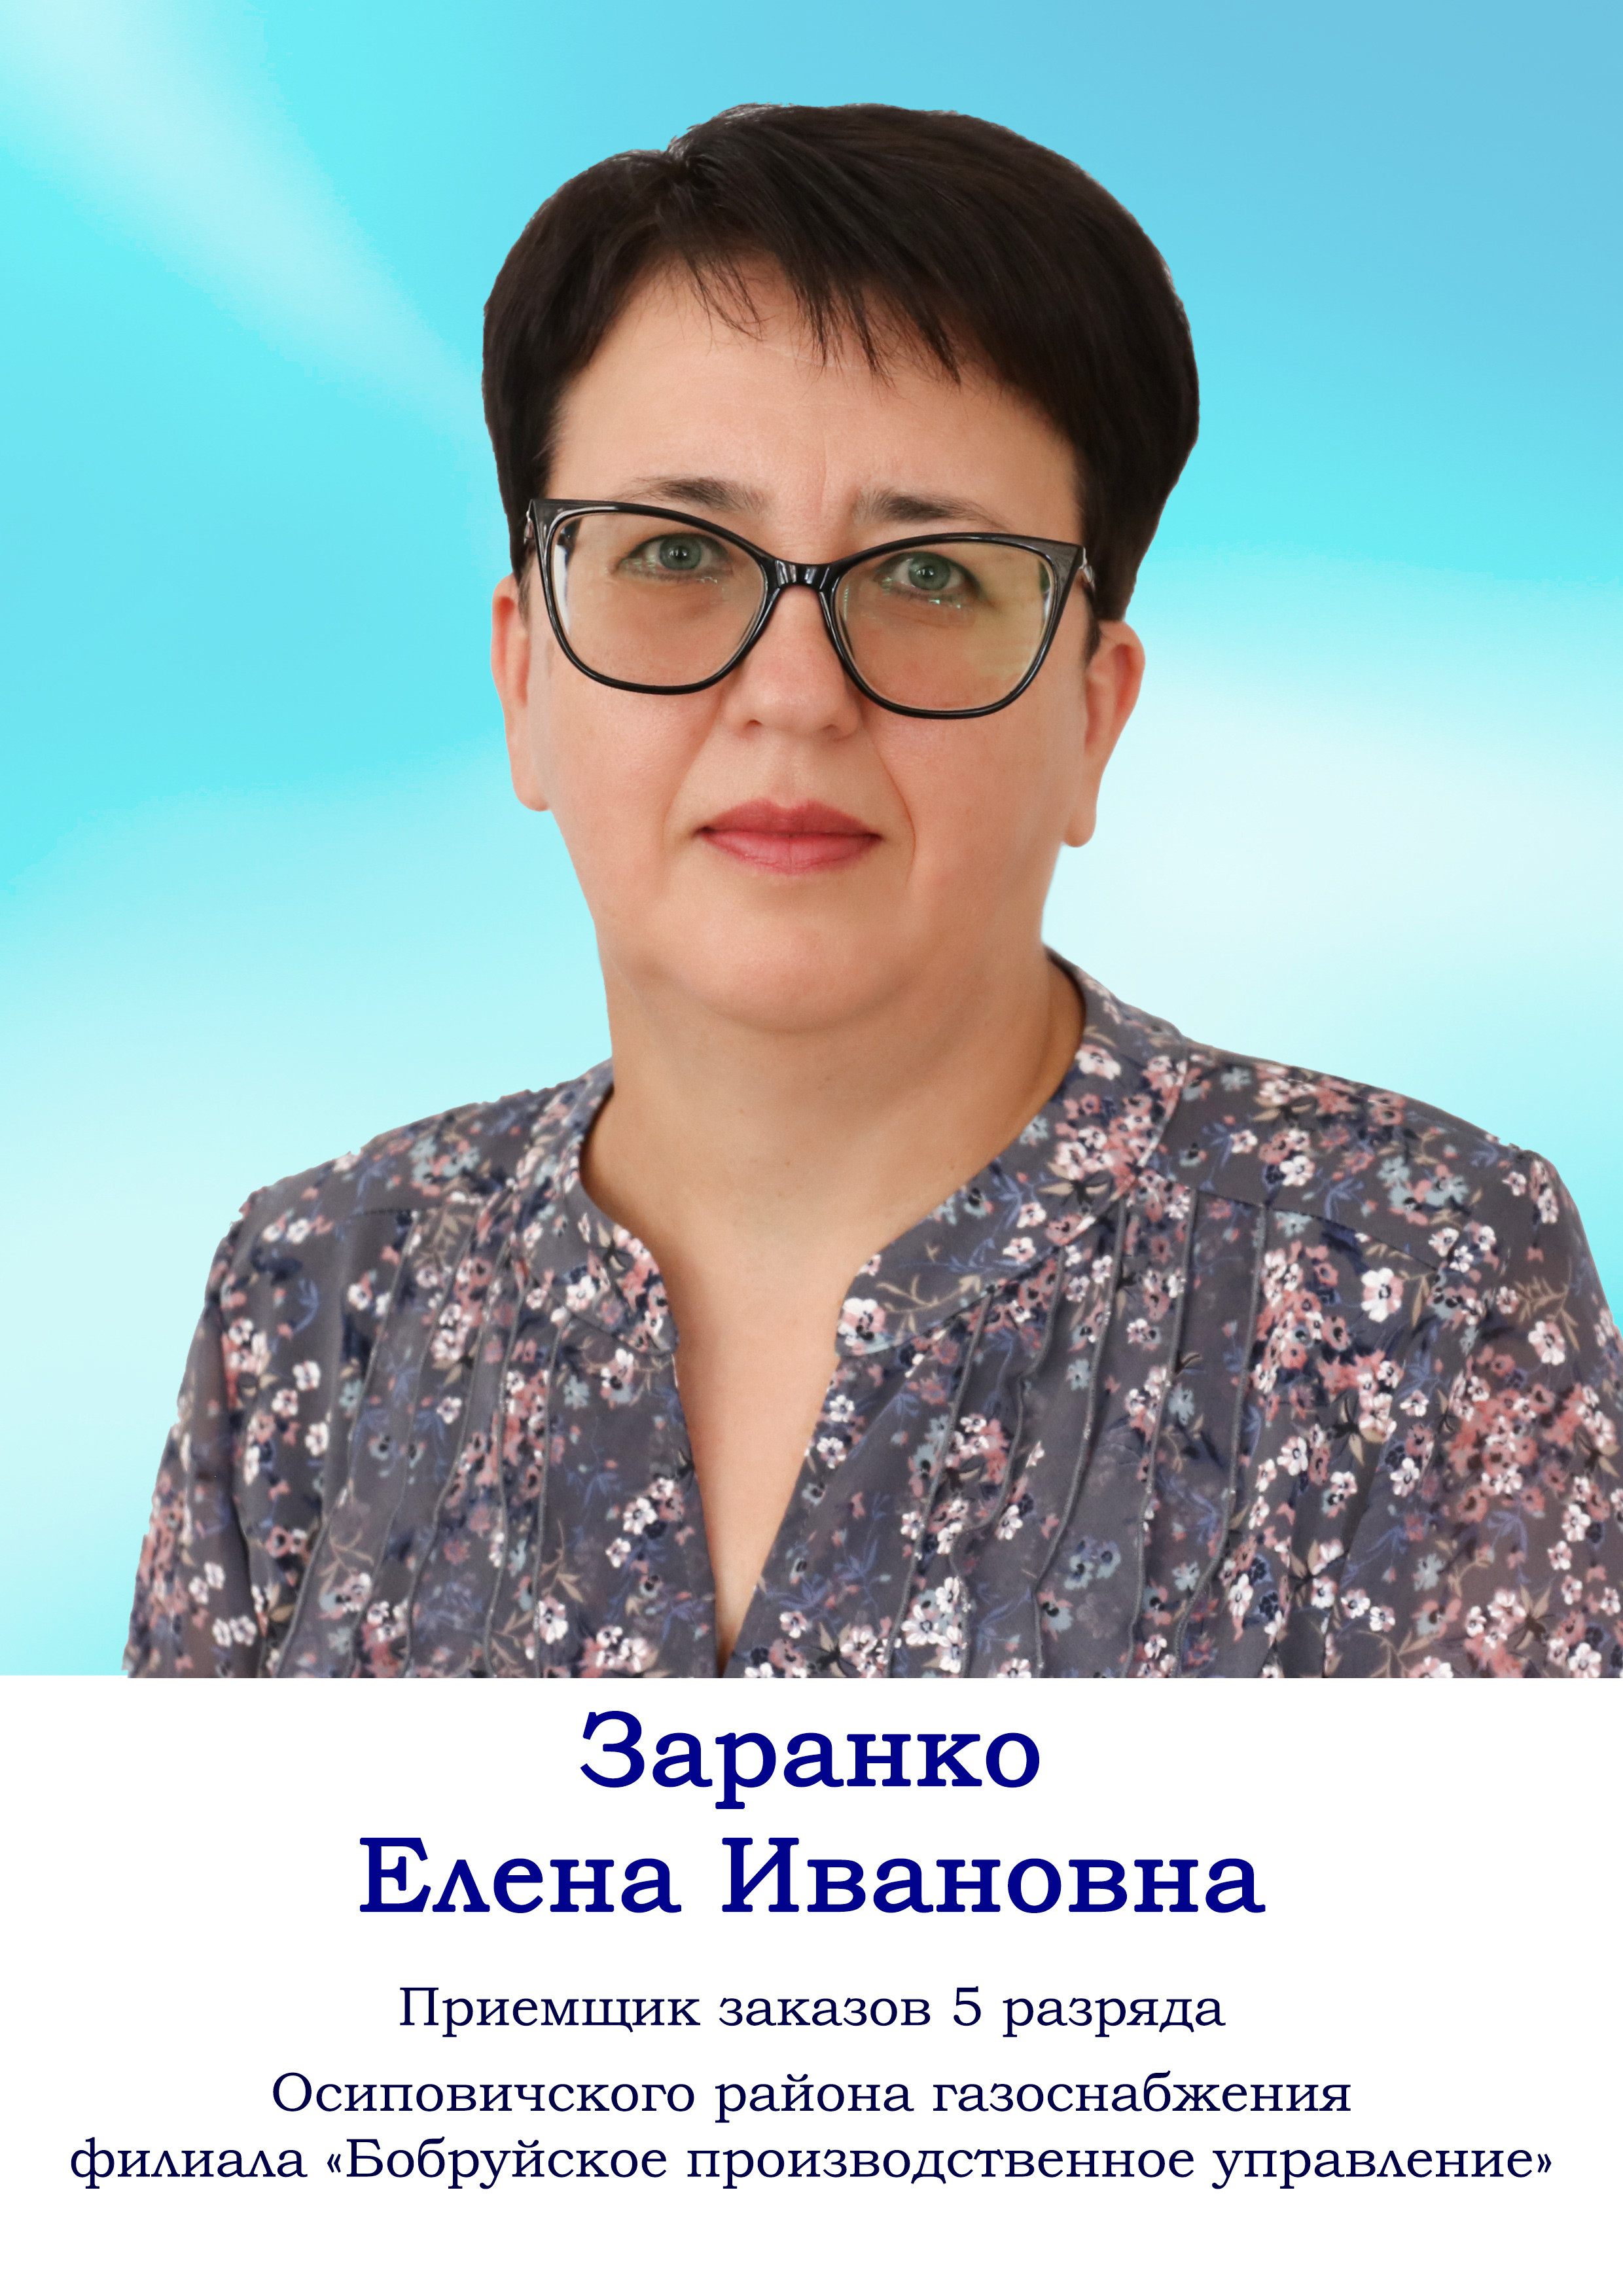 Заранко Елена Ивановна